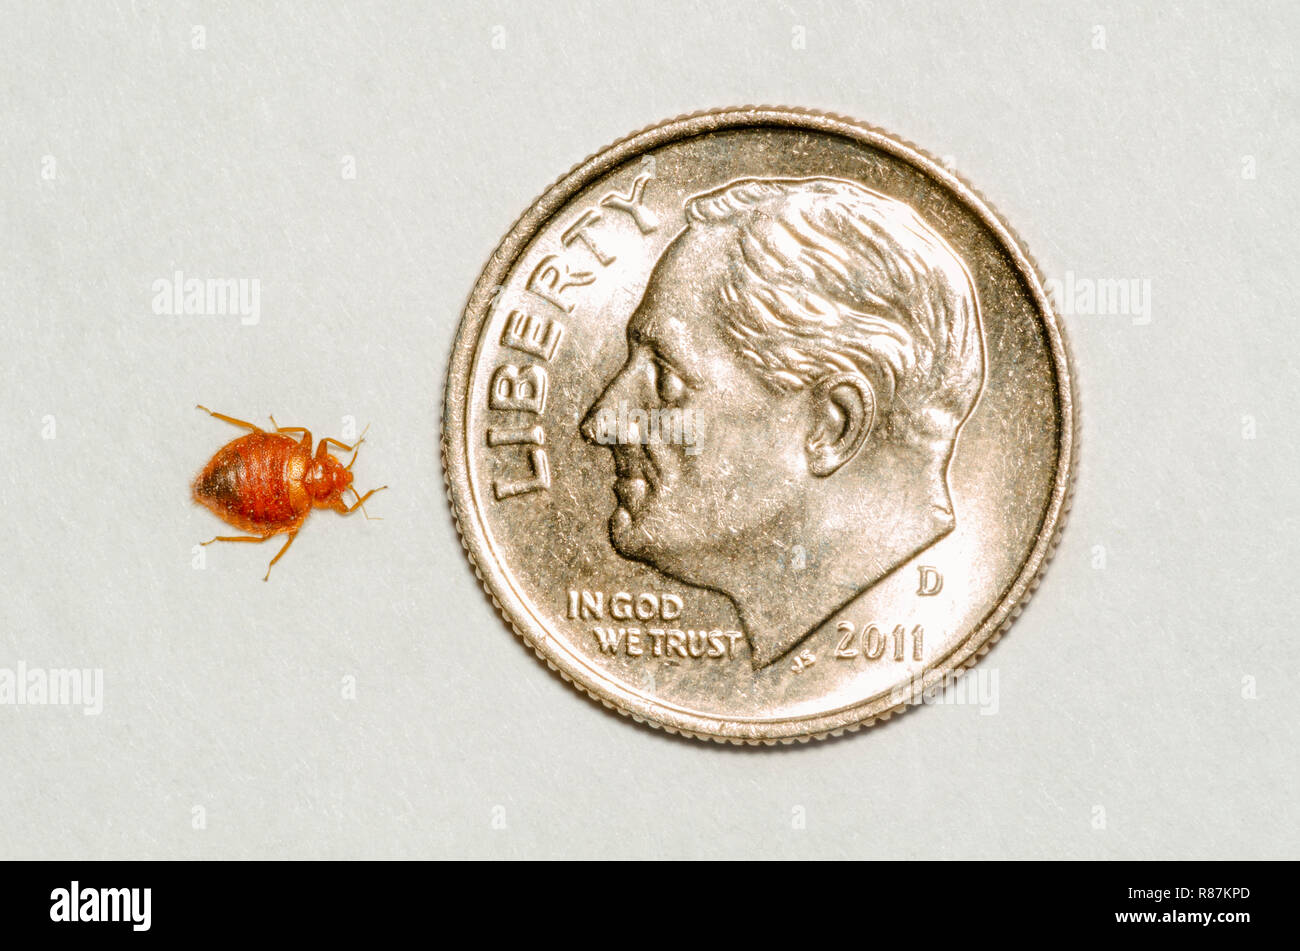 Comune letto adulto bug- Bedbug (Lepinotus reticulatus) rispetto ad una di noi Roosevelt dime, mostrando come i piccoli sono davvero. Foto scattata a maggio. Foto Stock